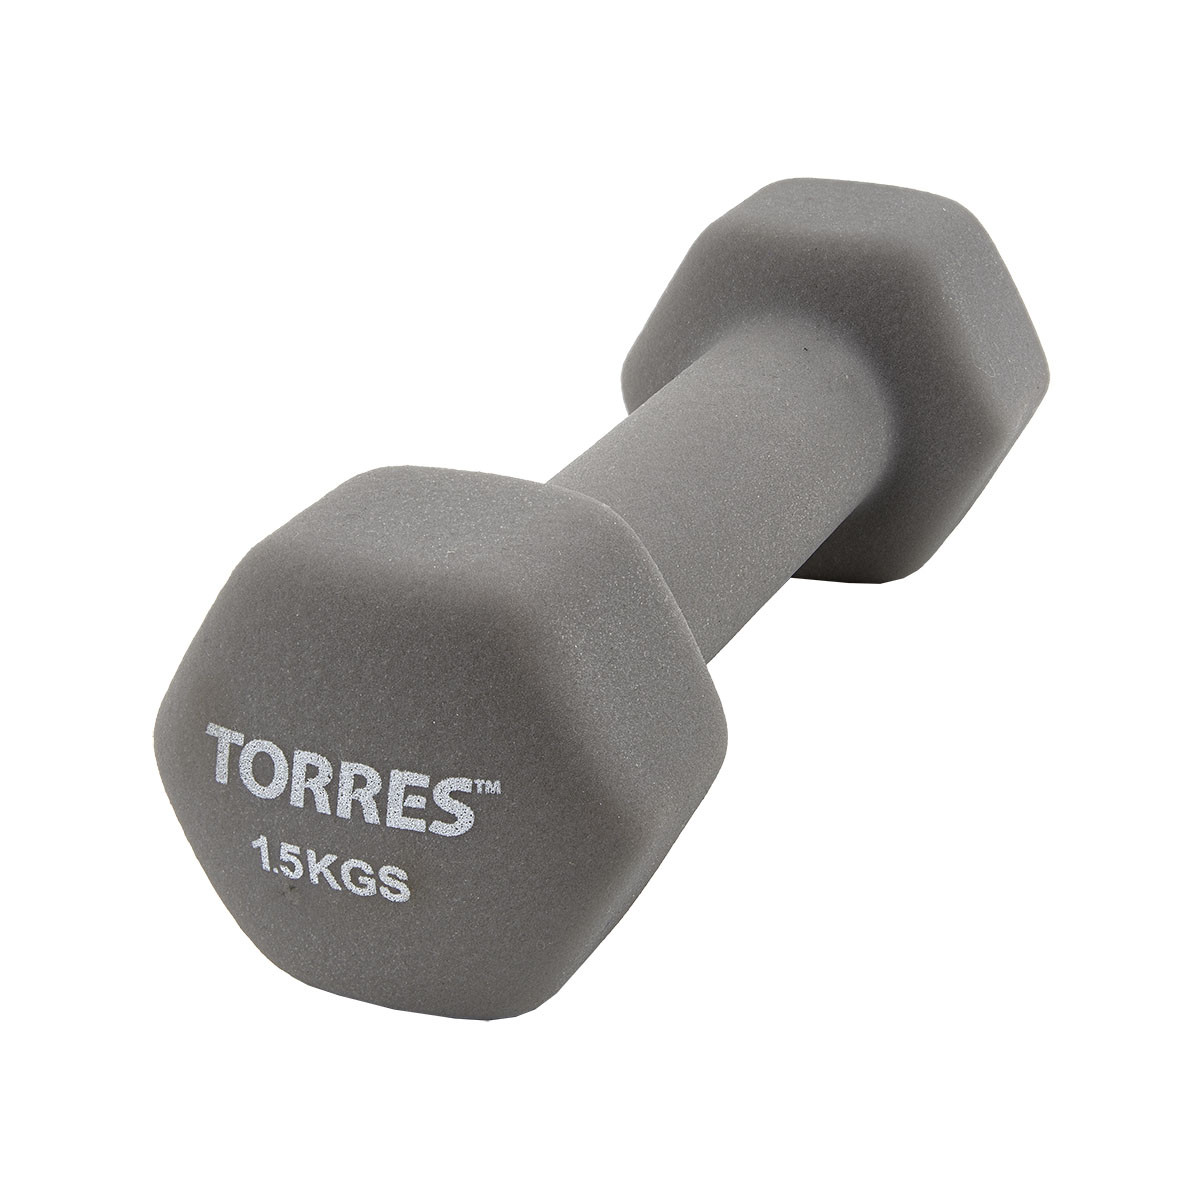 Гантель Torres 1,5 кг PL550115 1200_1200